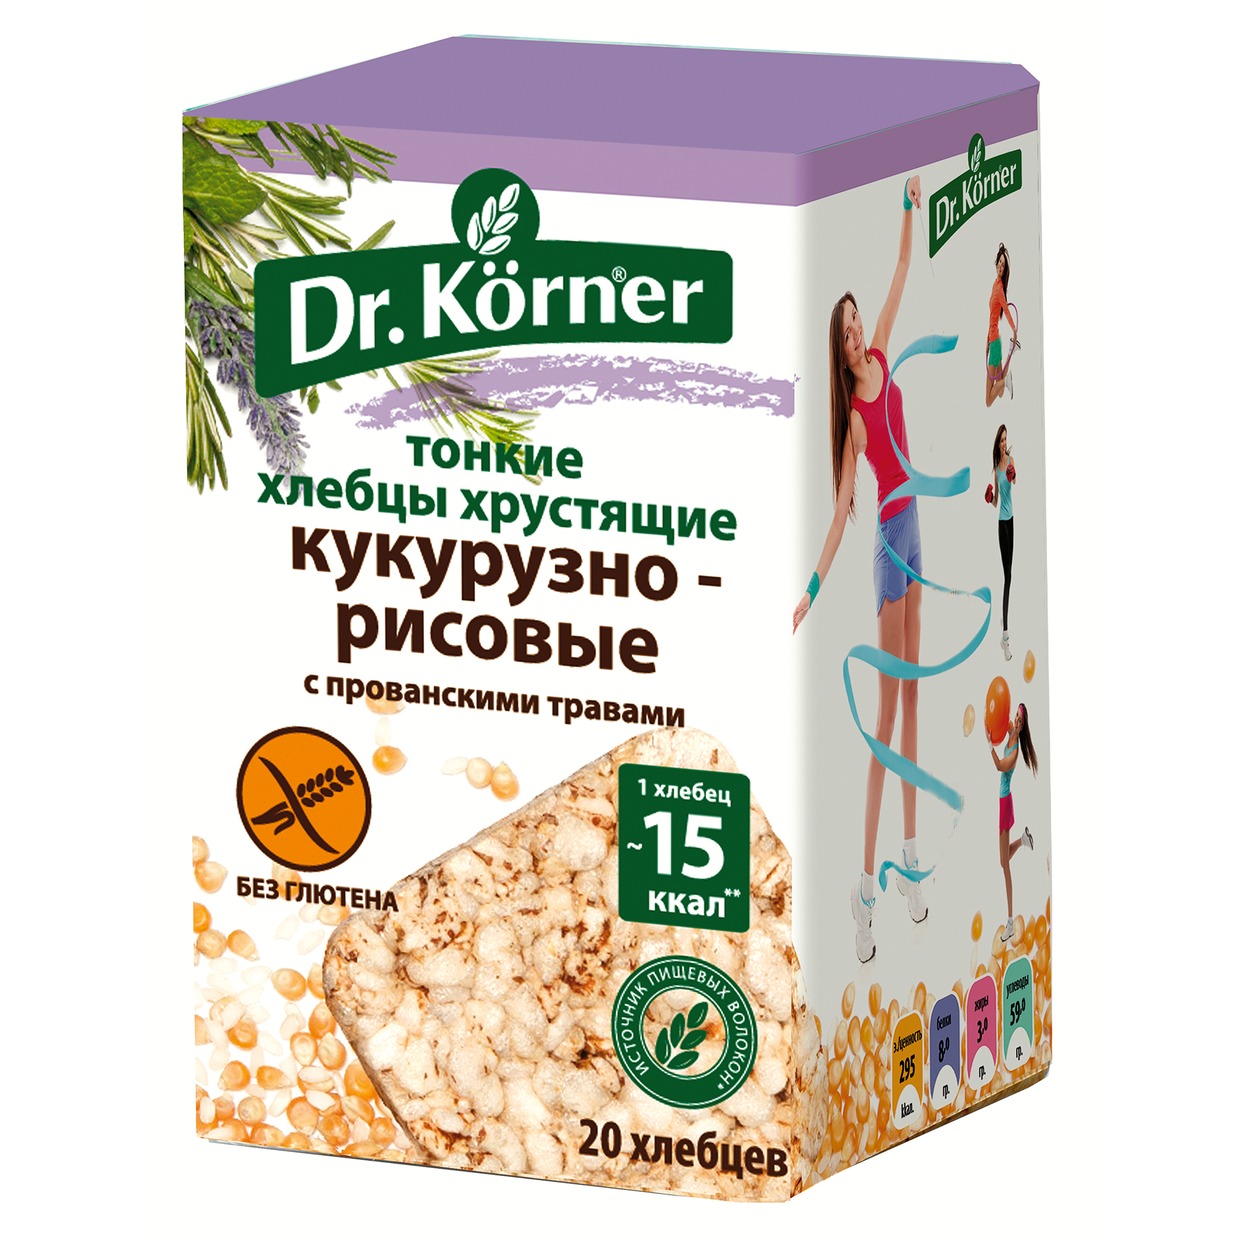 Хлебцы Dr.Korner, хрустящие, кукурузно-рисовые, с прованскими травами, 100 г по акции в Пятерочке